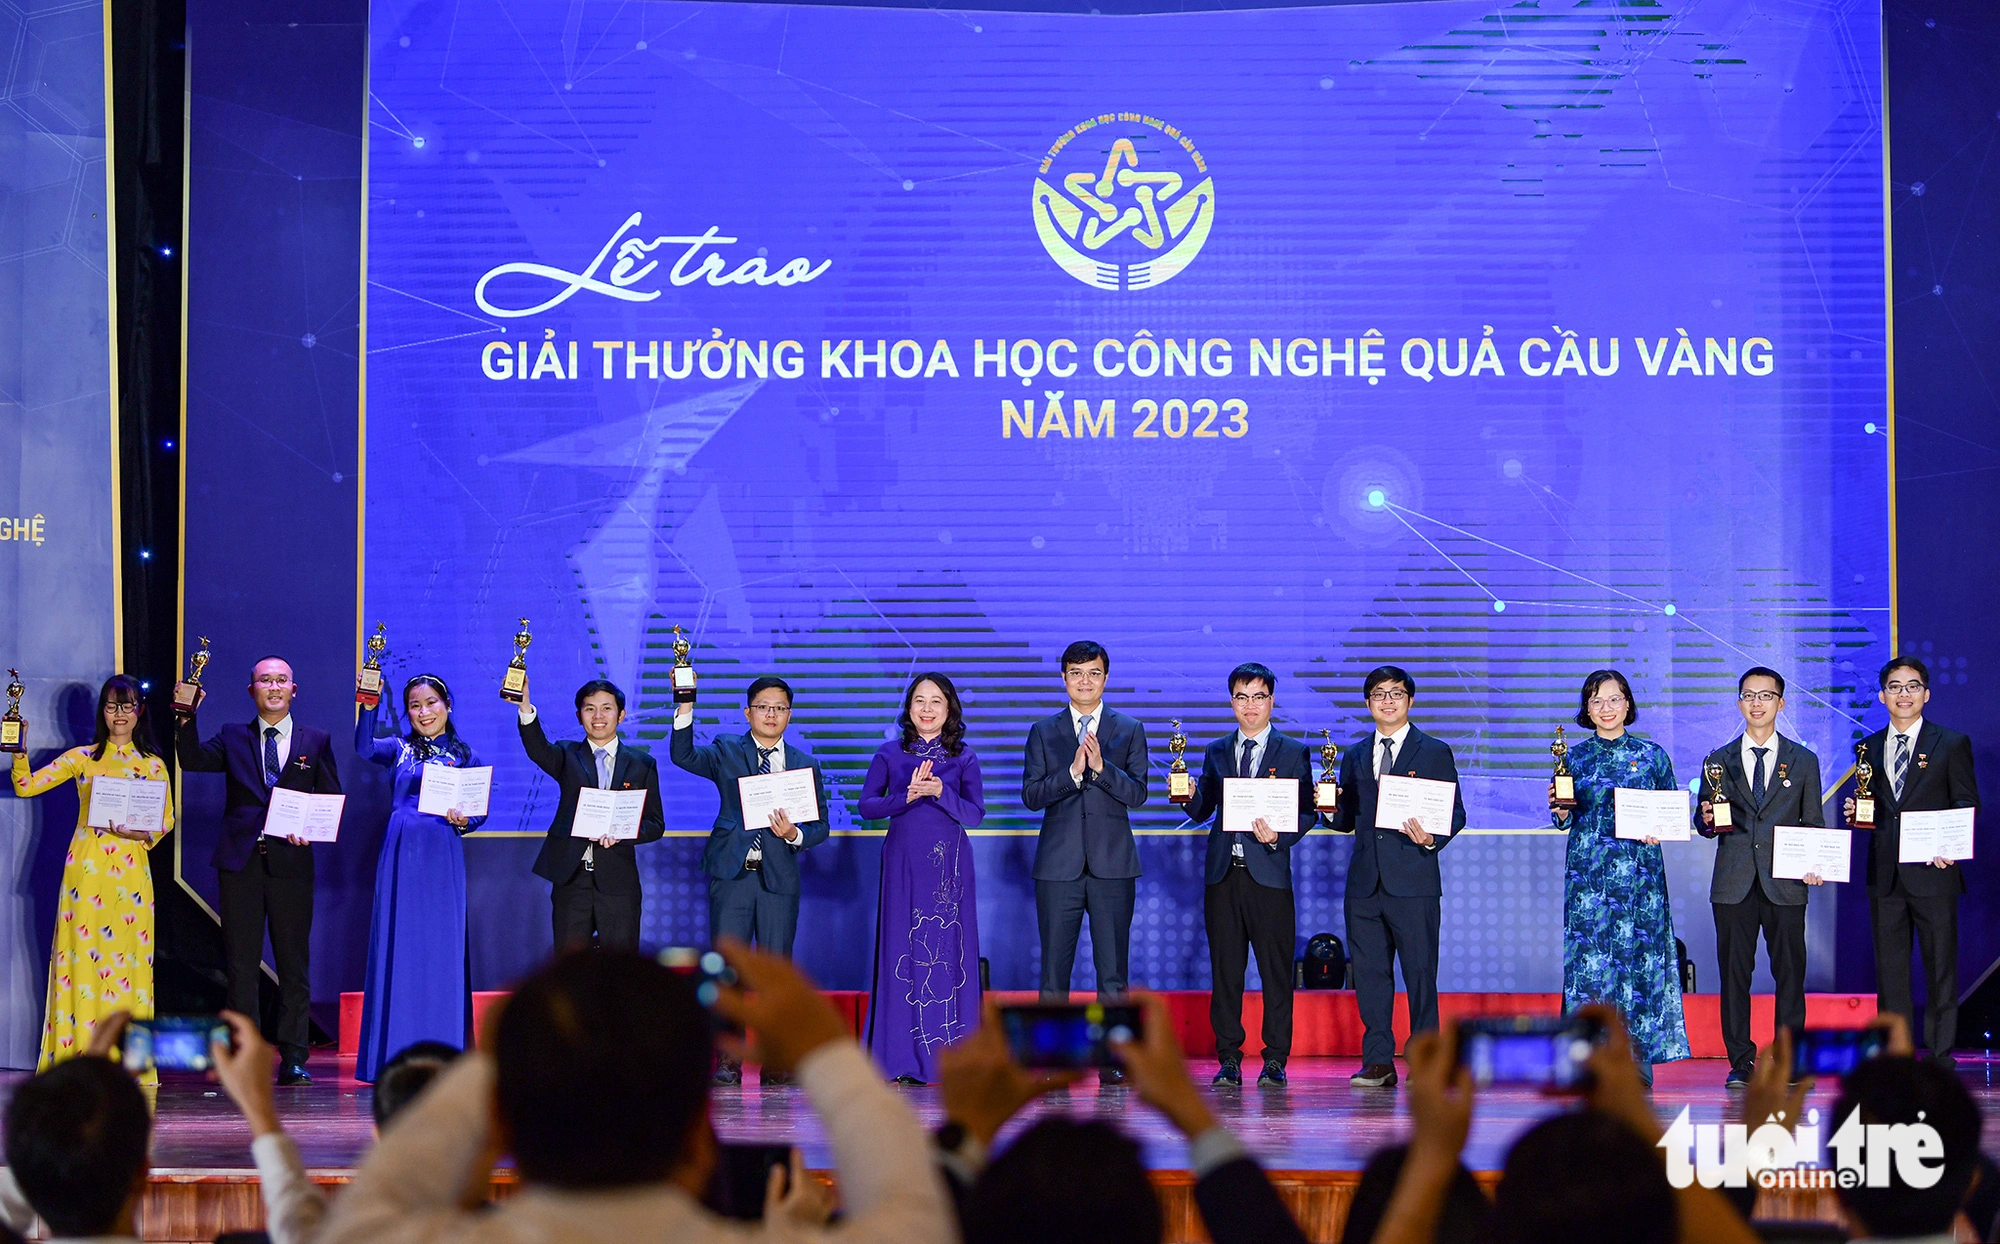 Phó chủ tịch nước Võ Thị Ánh Xuân và anh Bùi Quang Huy, bí thư thứ nhất Trung ương Đoàn, trao giải thưởng Quả cầu vàng 2023 cho 10 nhà khoa học trẻ